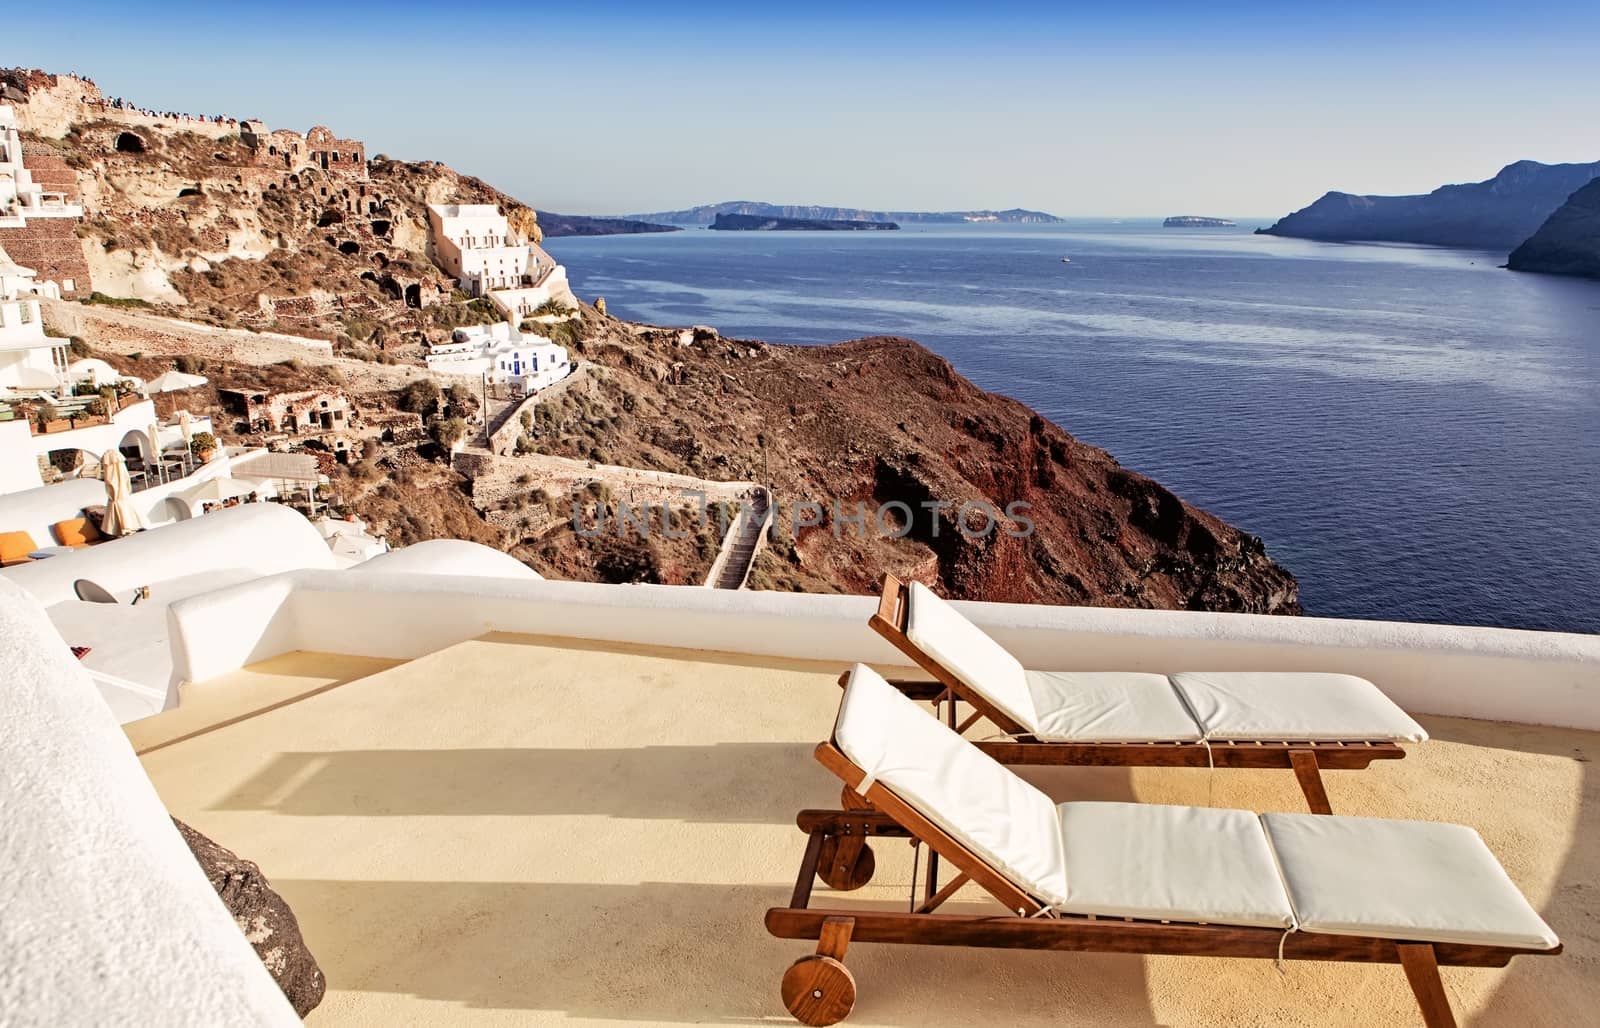 Idyllic terrace in Oia, Santorini, Greece by mitakag